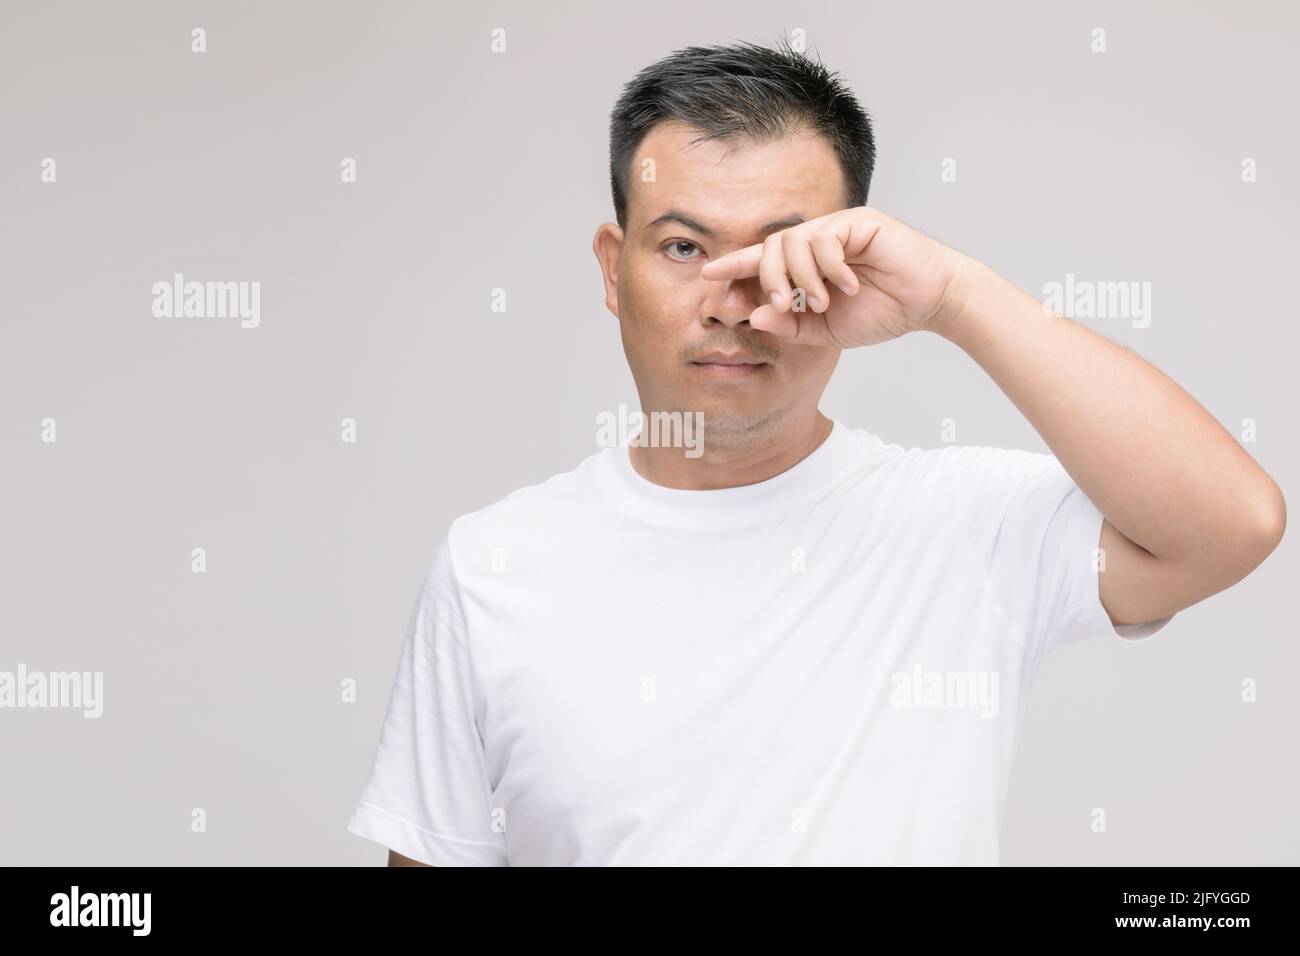 Concept d'irritation des yeux : Portrait de l'homme asiatique en posture de fatigue oculaire, irritation ou problème oculaire. Prise de vue en studio isolée sur fond gris Banque D'Images